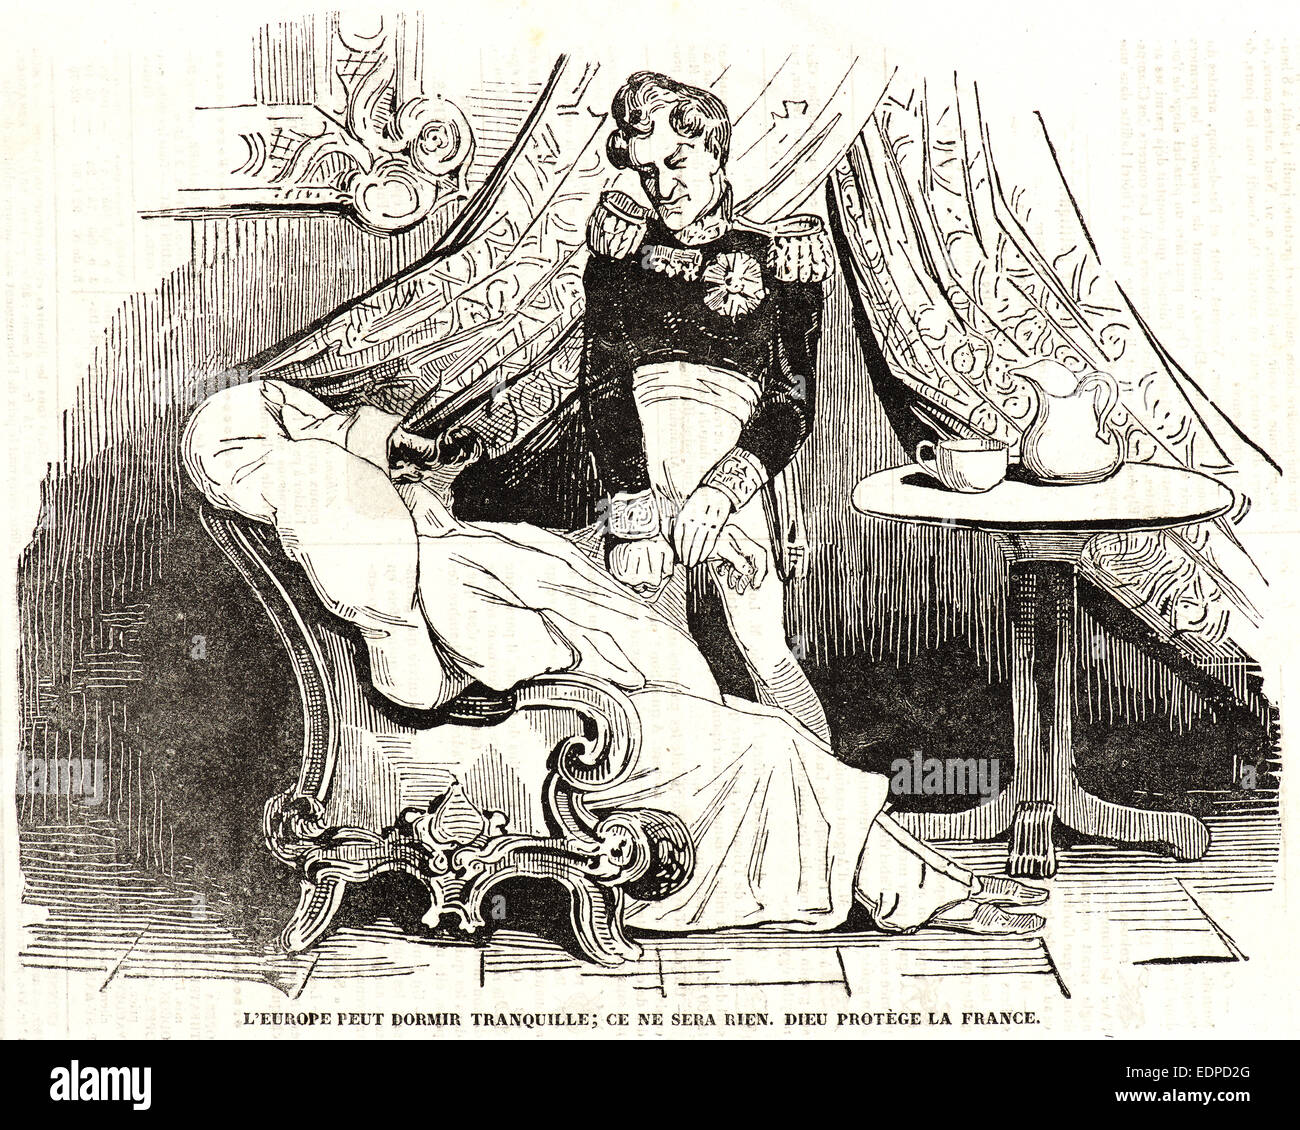 Honoré Daumier (French, 1808 - 1879). L'Europe peut dormir Tranquille; ce ne sera bien. Dieu protège la France., 1834 Stock Photo